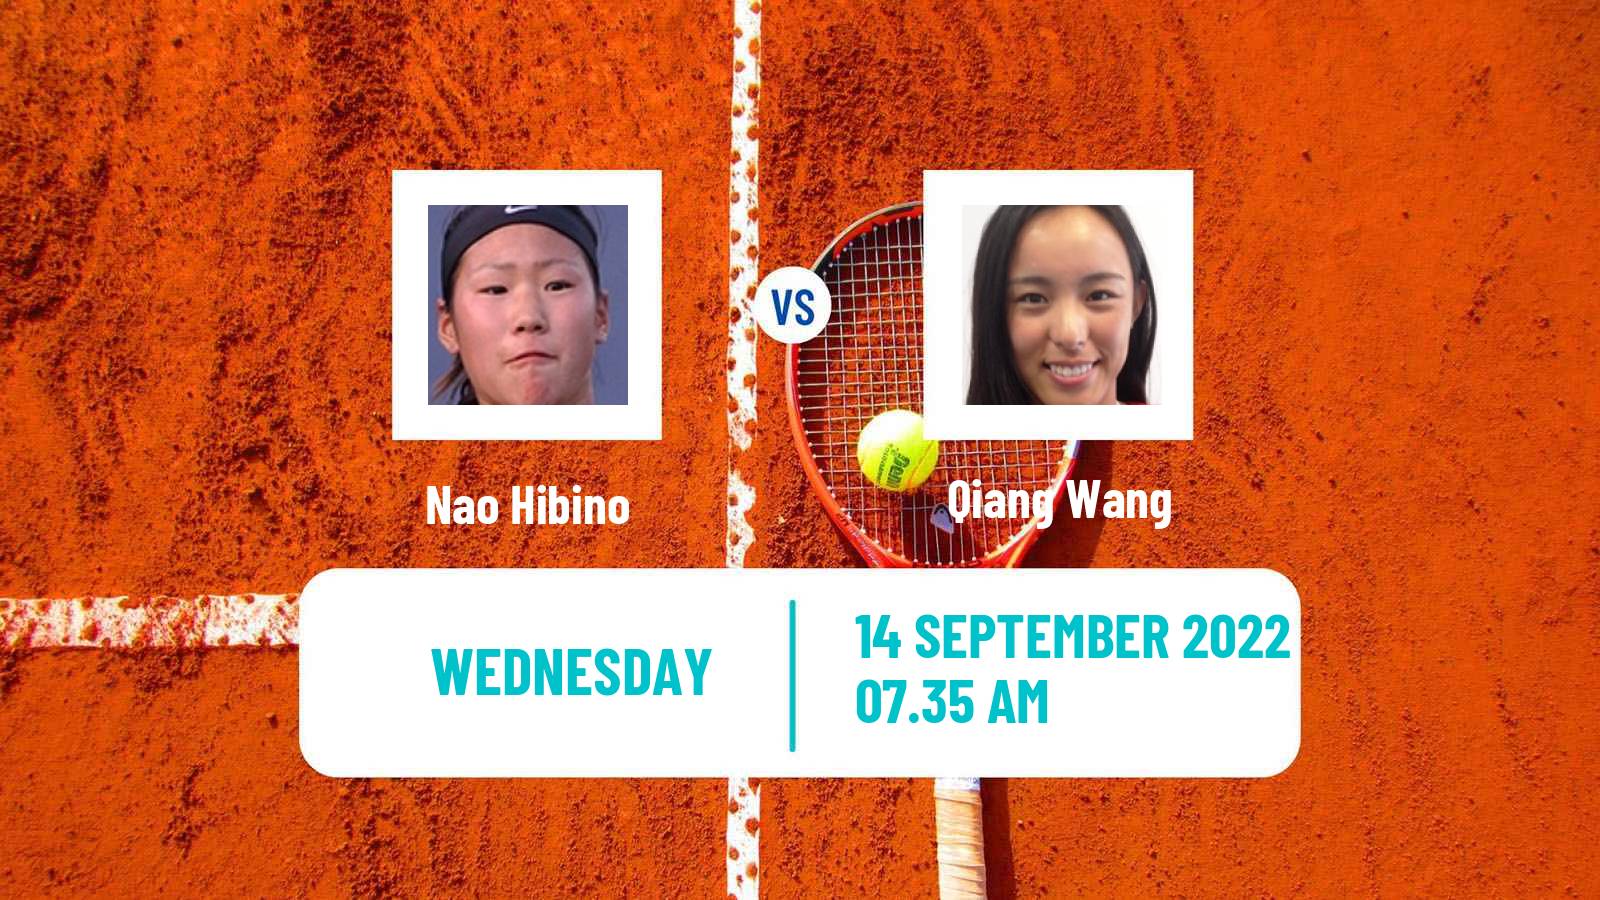 Tennis WTA Chennai Nao Hibino - Qiang Wang